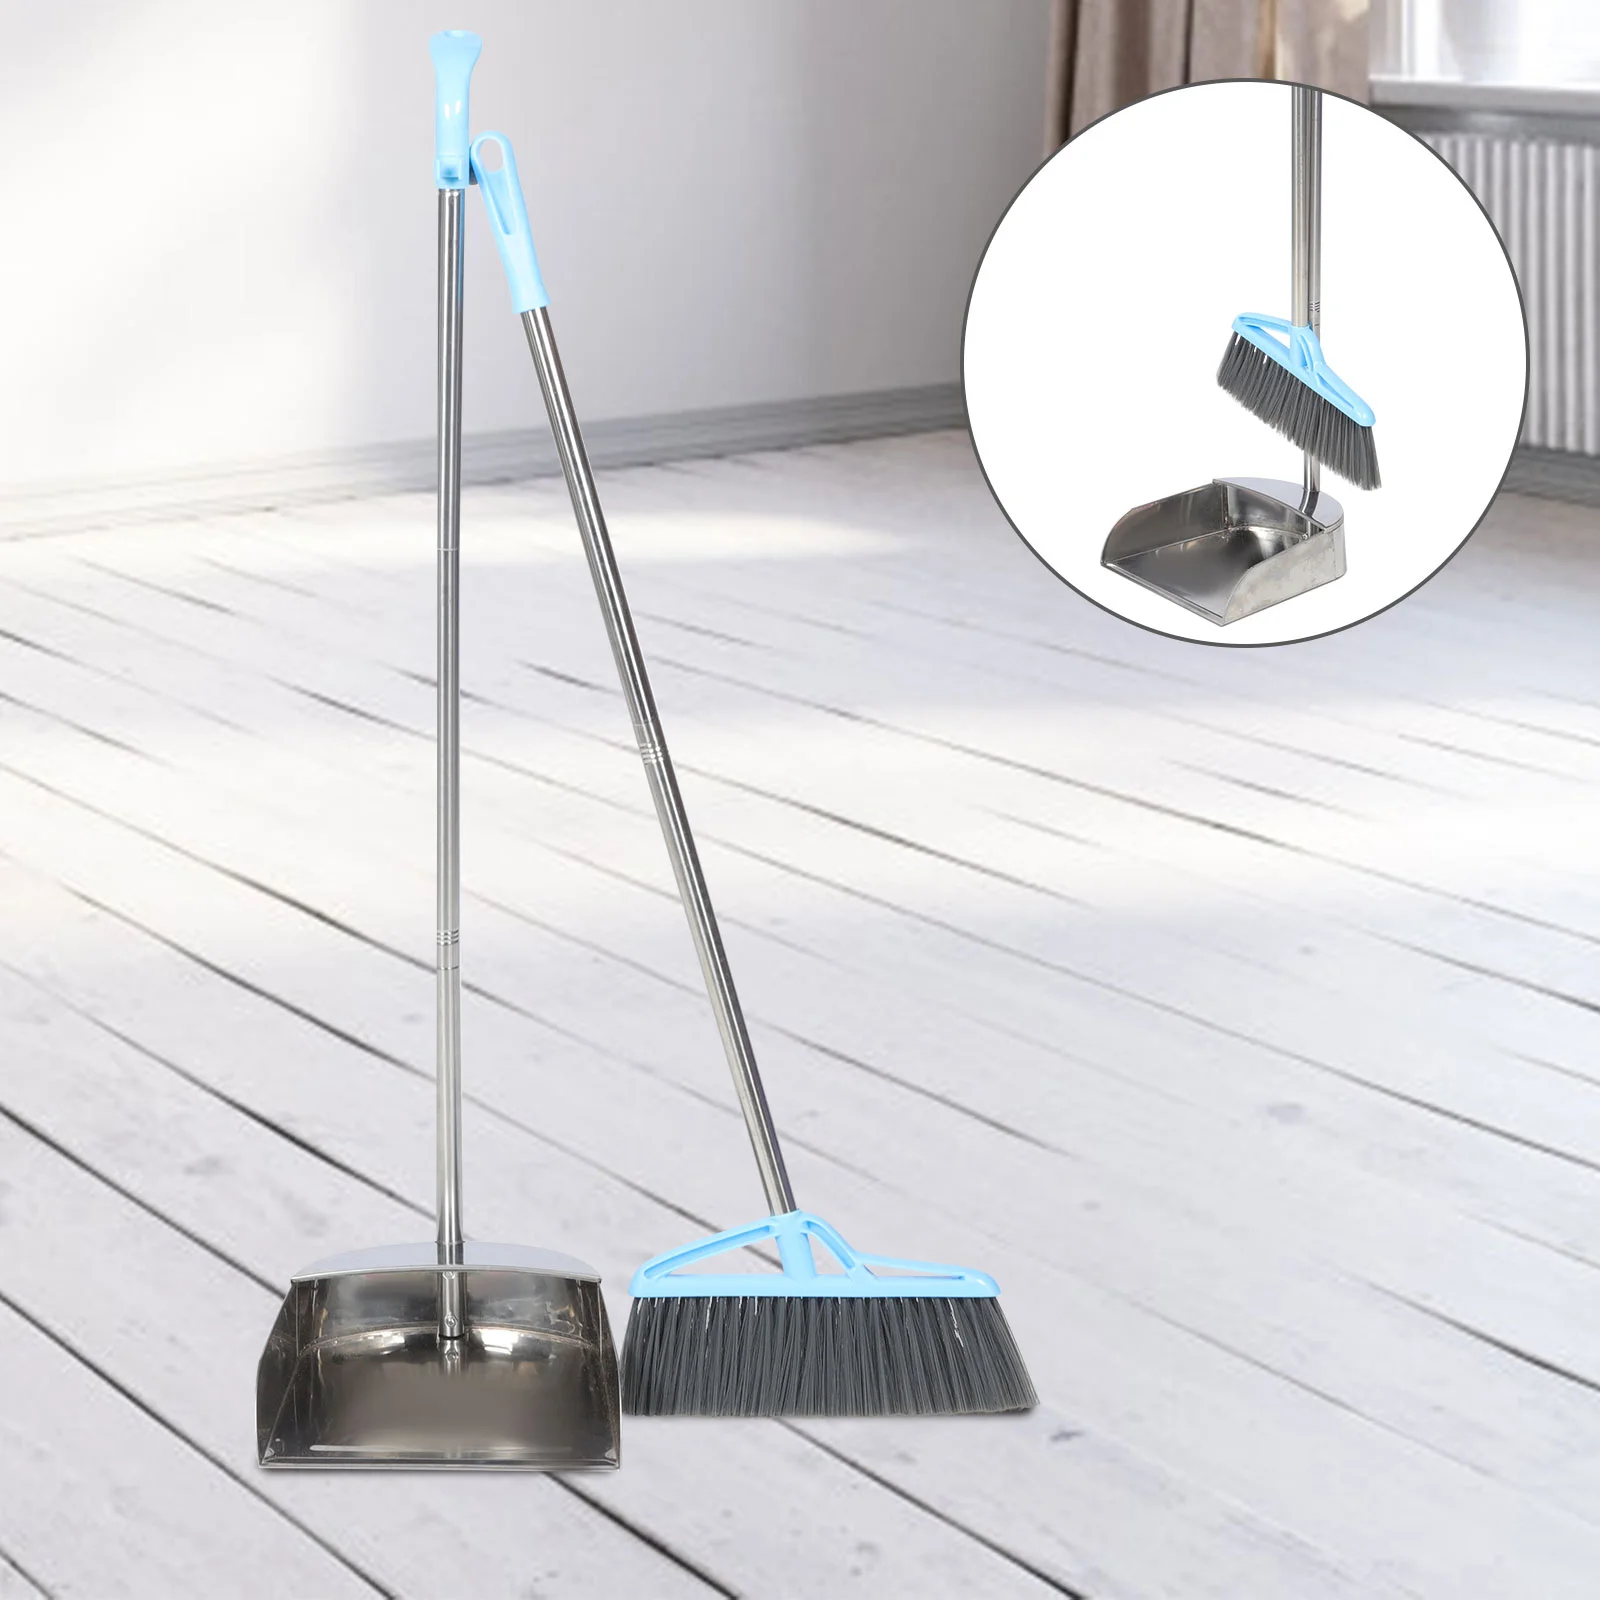 

Broom Long Handle Dust Pan Standing Dustpan Upright Home Floor Cleaning Tools Metal